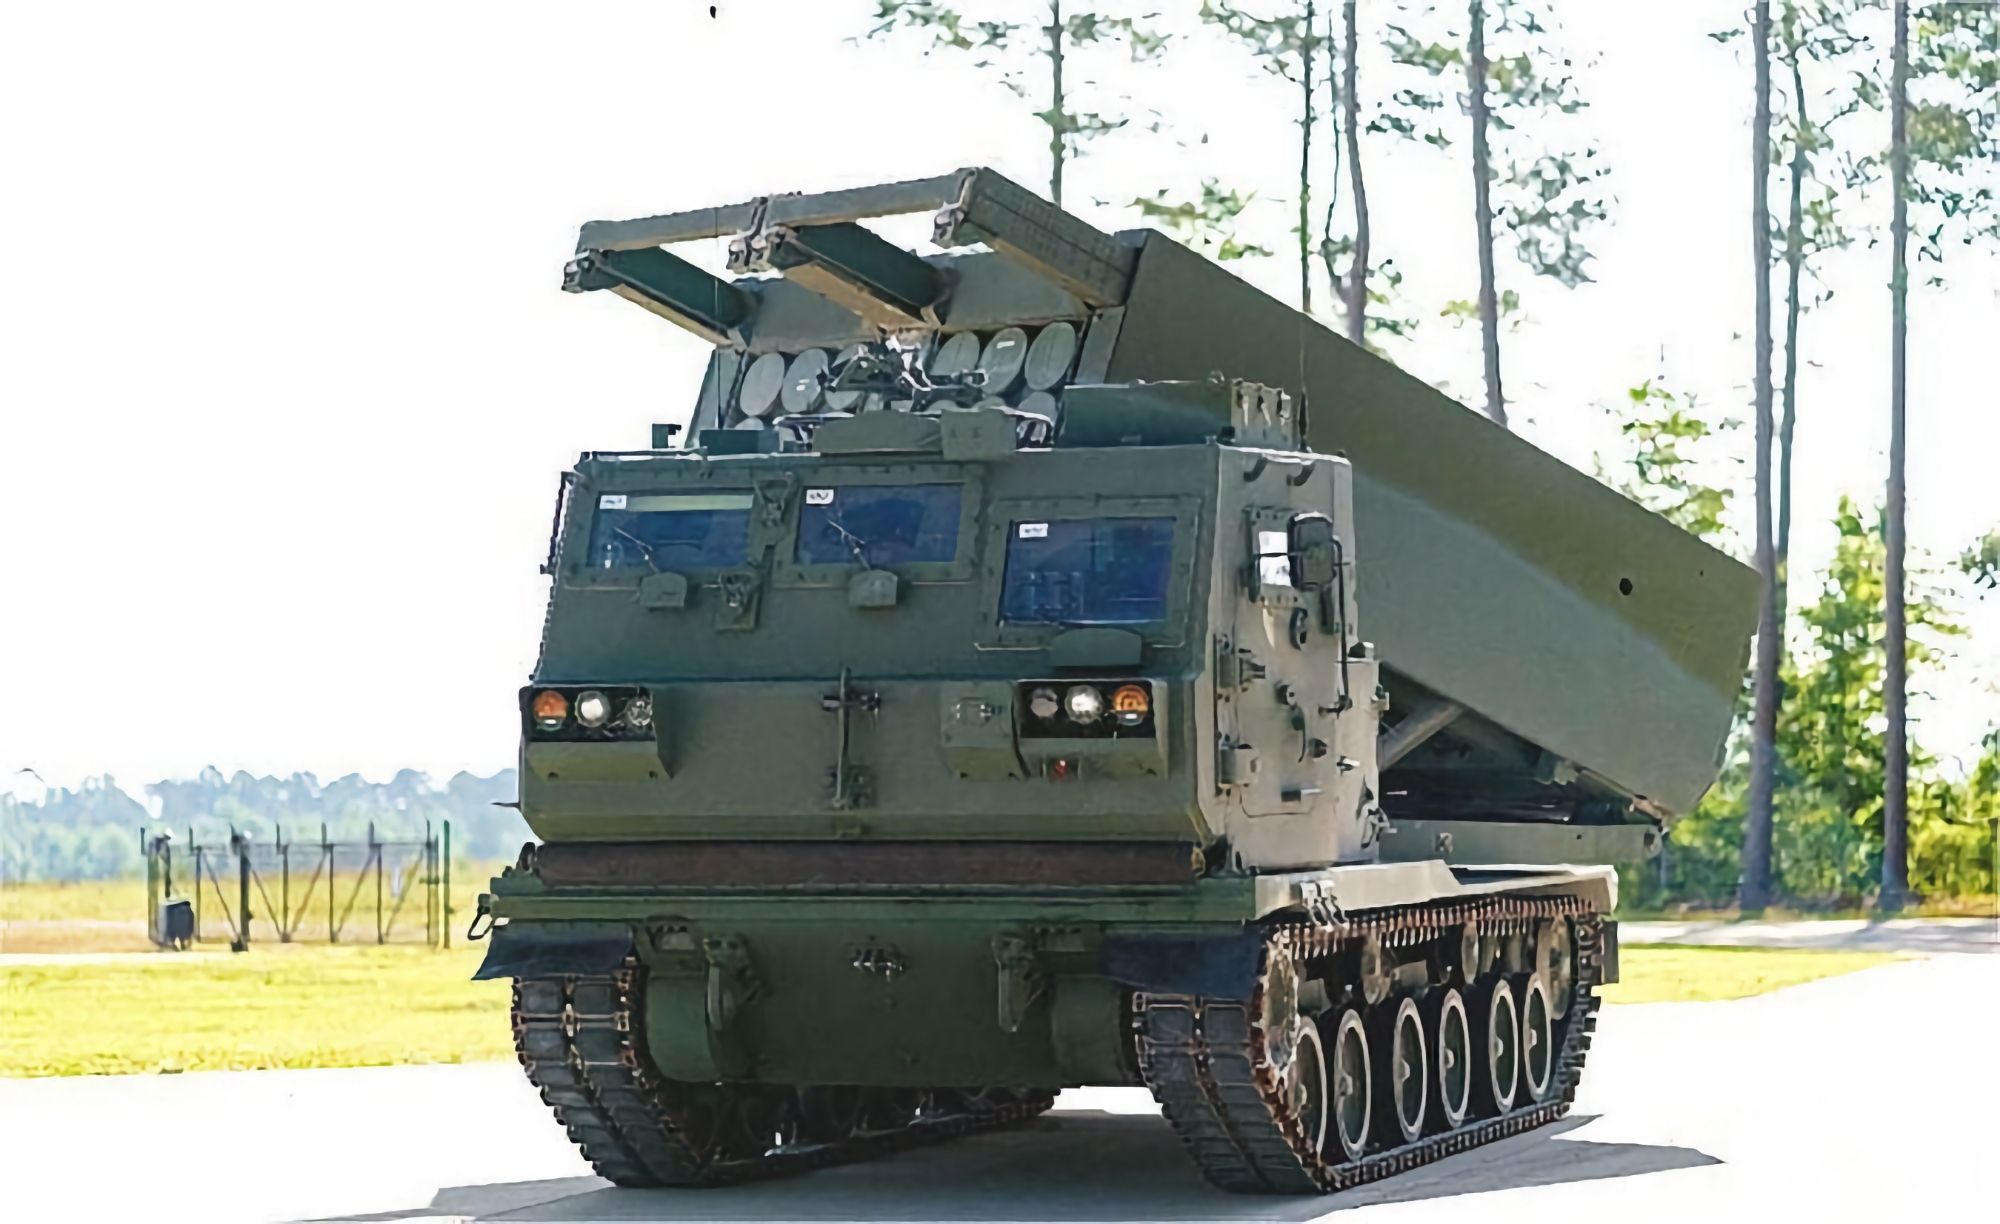 Gli Stati Uniti hanno ordinato a Lockheed Martin di aggiornare altri lanciarazzi multipli M270, che saranno in grado di lanciare missili PrSM con una gittata di 500 chilometri.